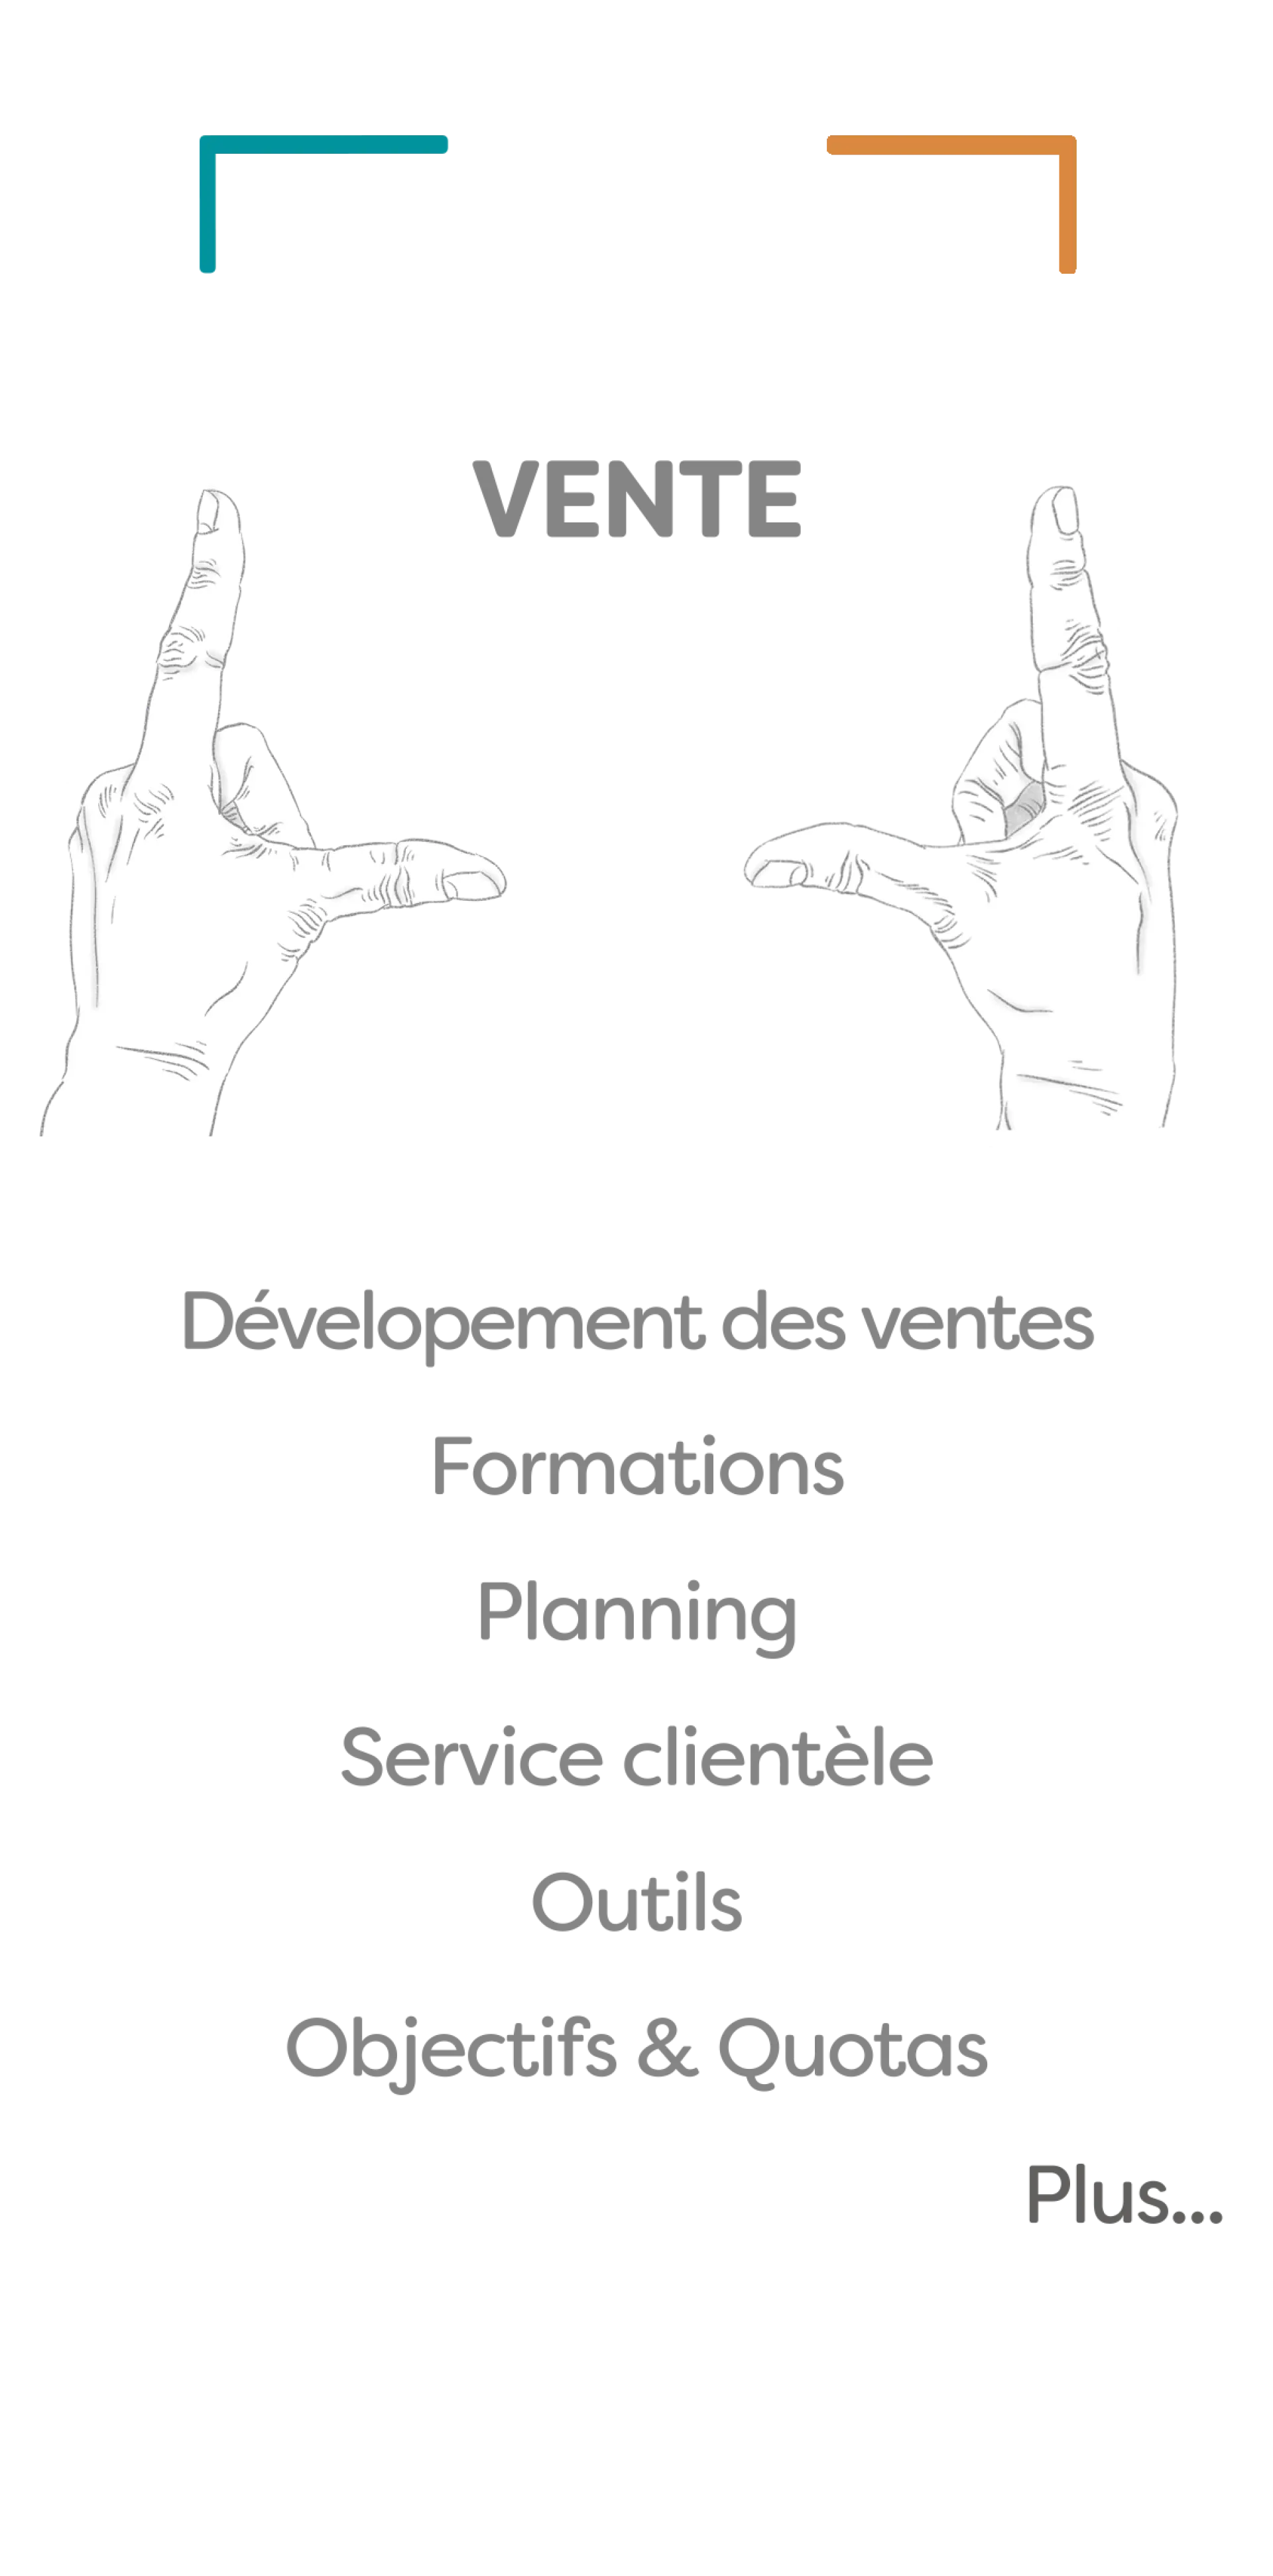 Services Vente : Dévelopement, Formations, Après-vente, Stratégie